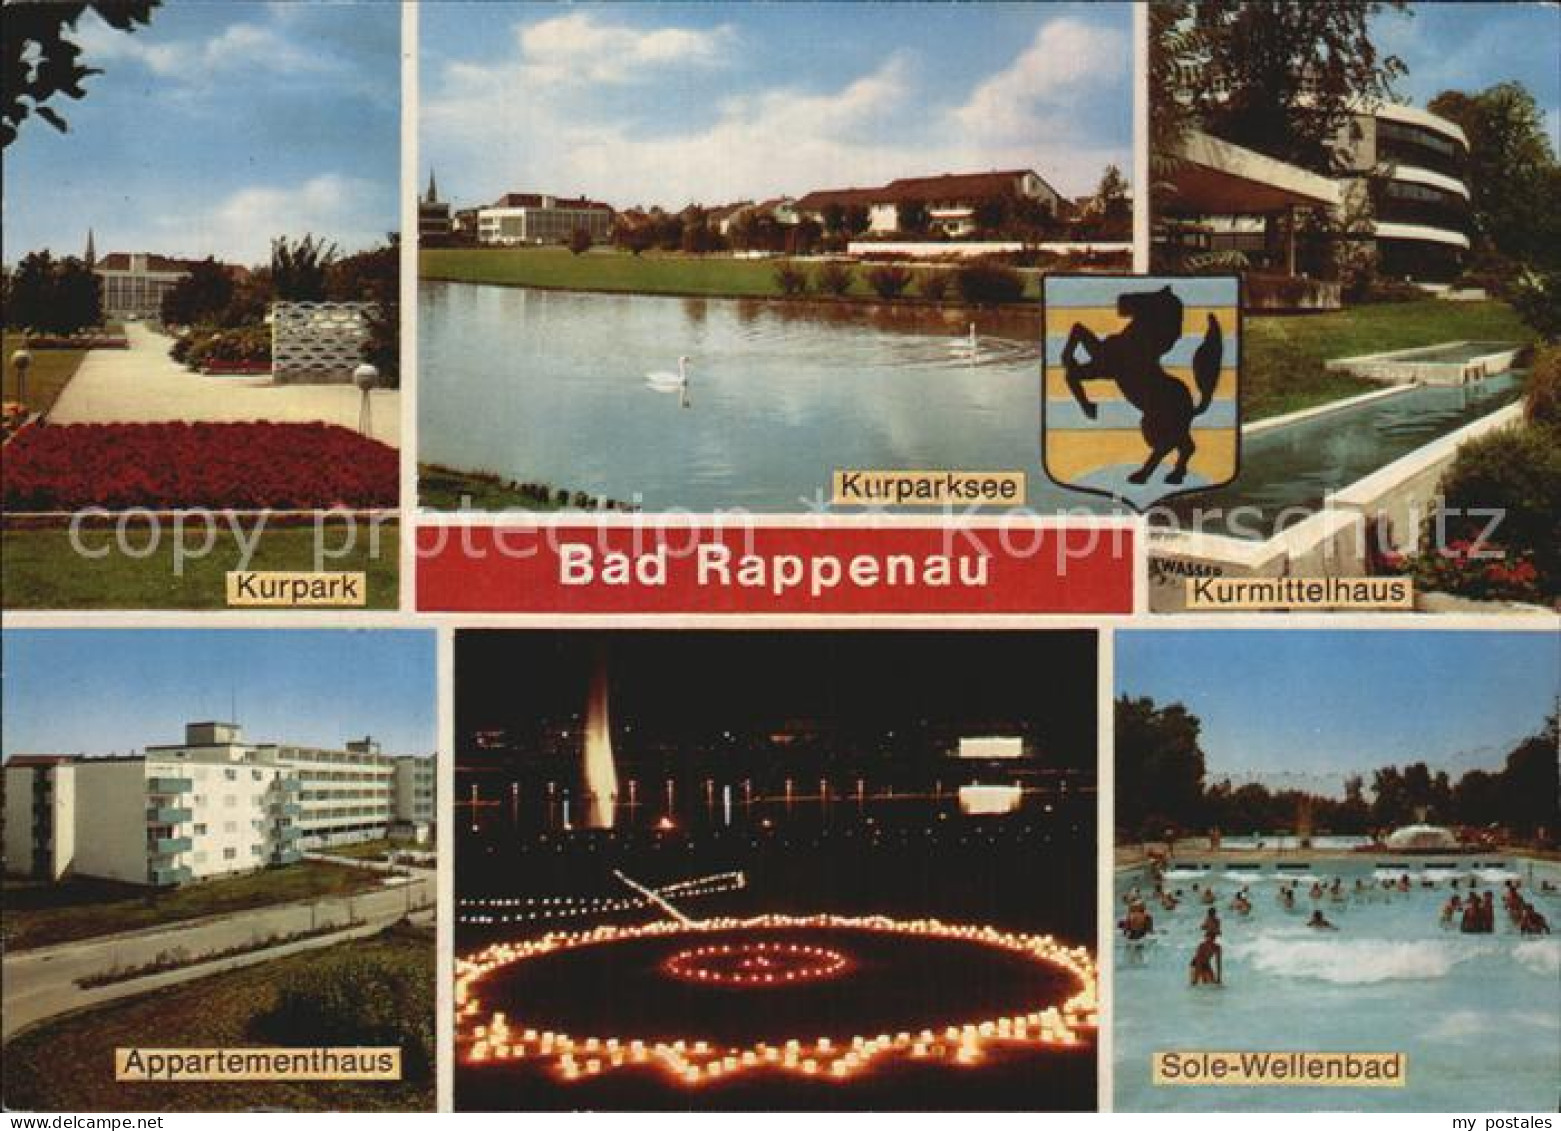 72391110 Bad Rappenau Sole-Wellenbad Kurmittelhaus Kurparksee  Bad Rappenau - Bad Rappenau